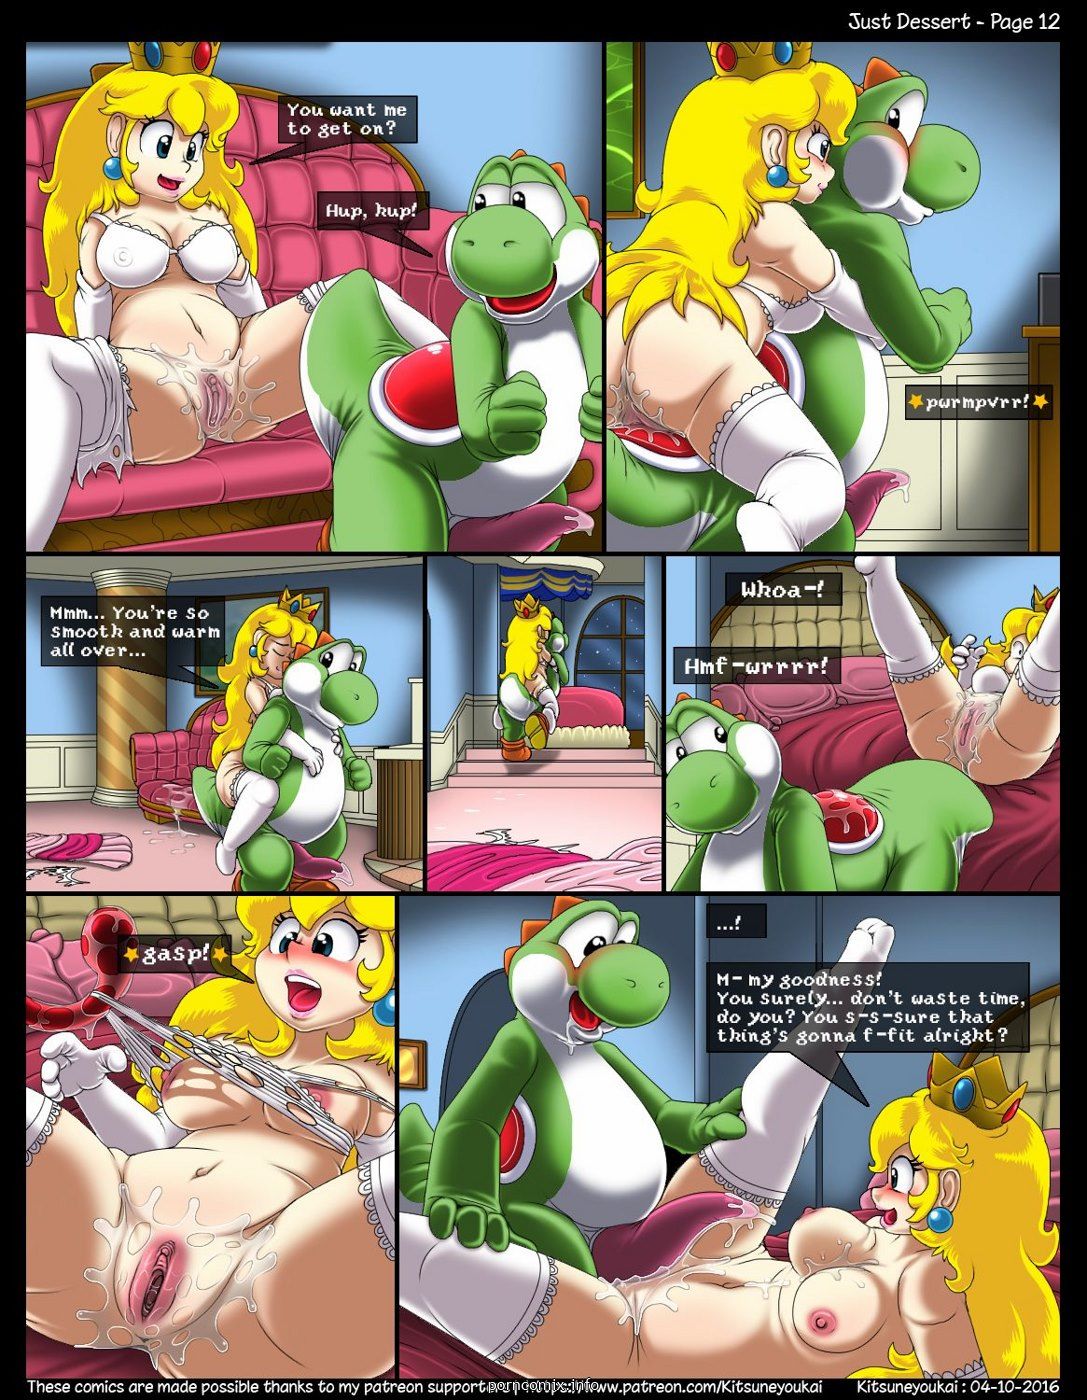 Kitsune Youkai - Just Dessert,Super Mario page 12